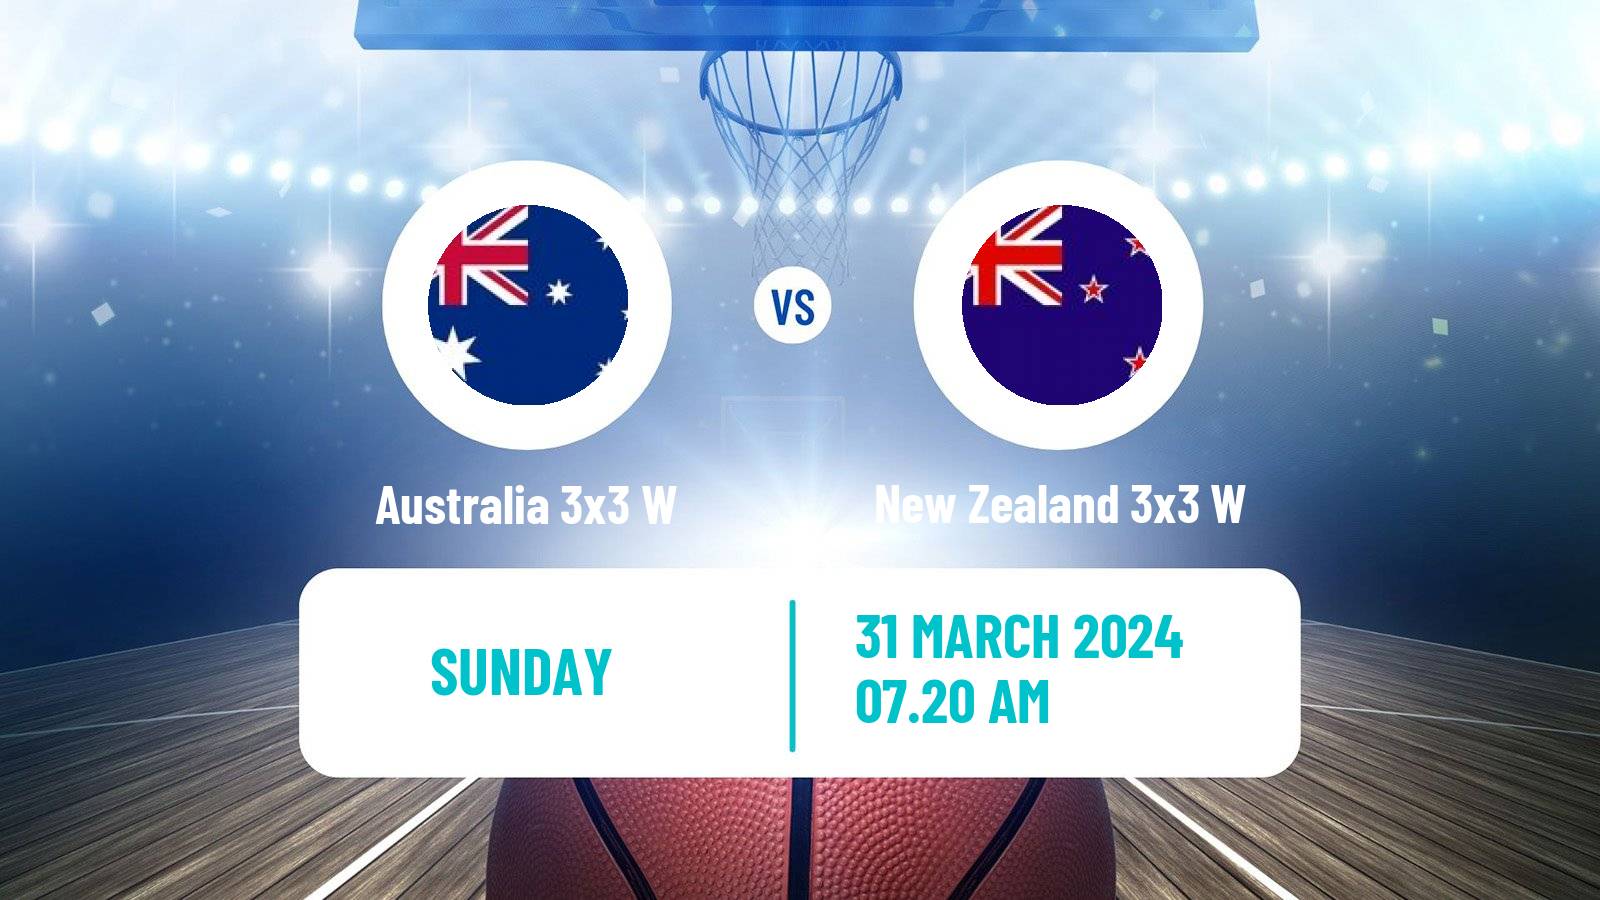 Basketball Asia Cup 3x3 Women Australia 3x3 W - New Zealand 3x3 W